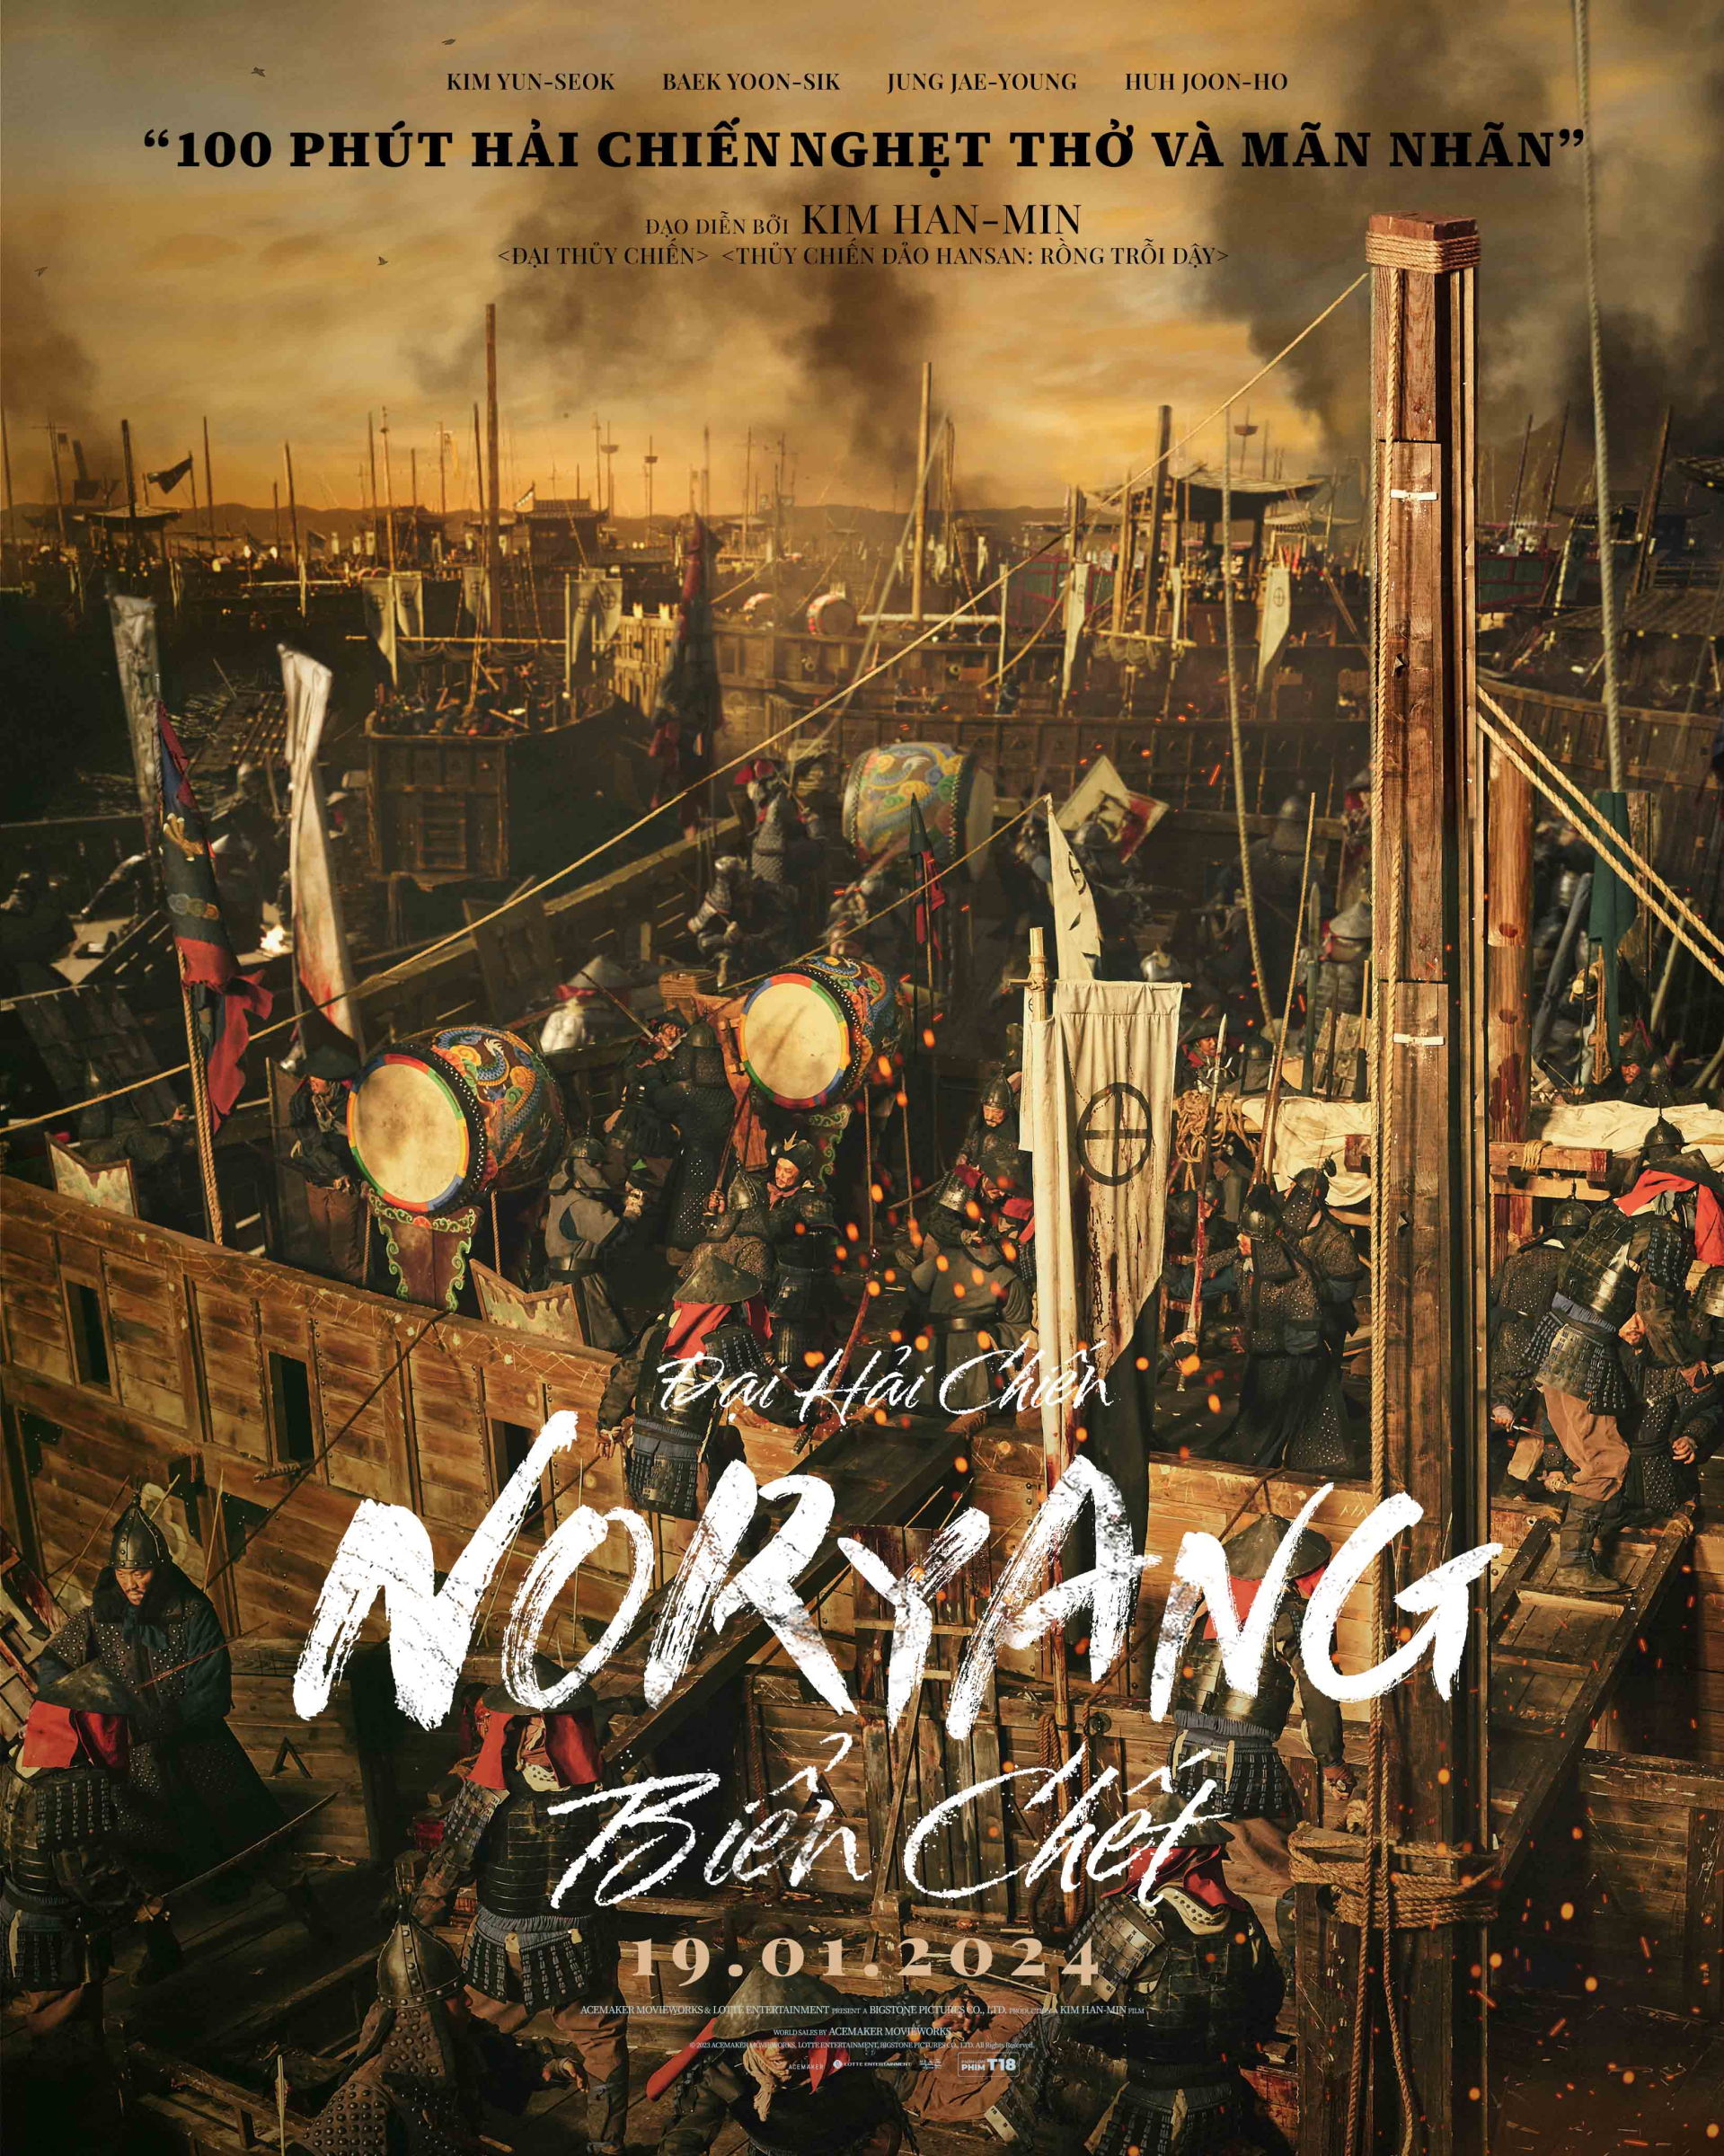 Poster phim “Đại Hải Chiến Noryang.”